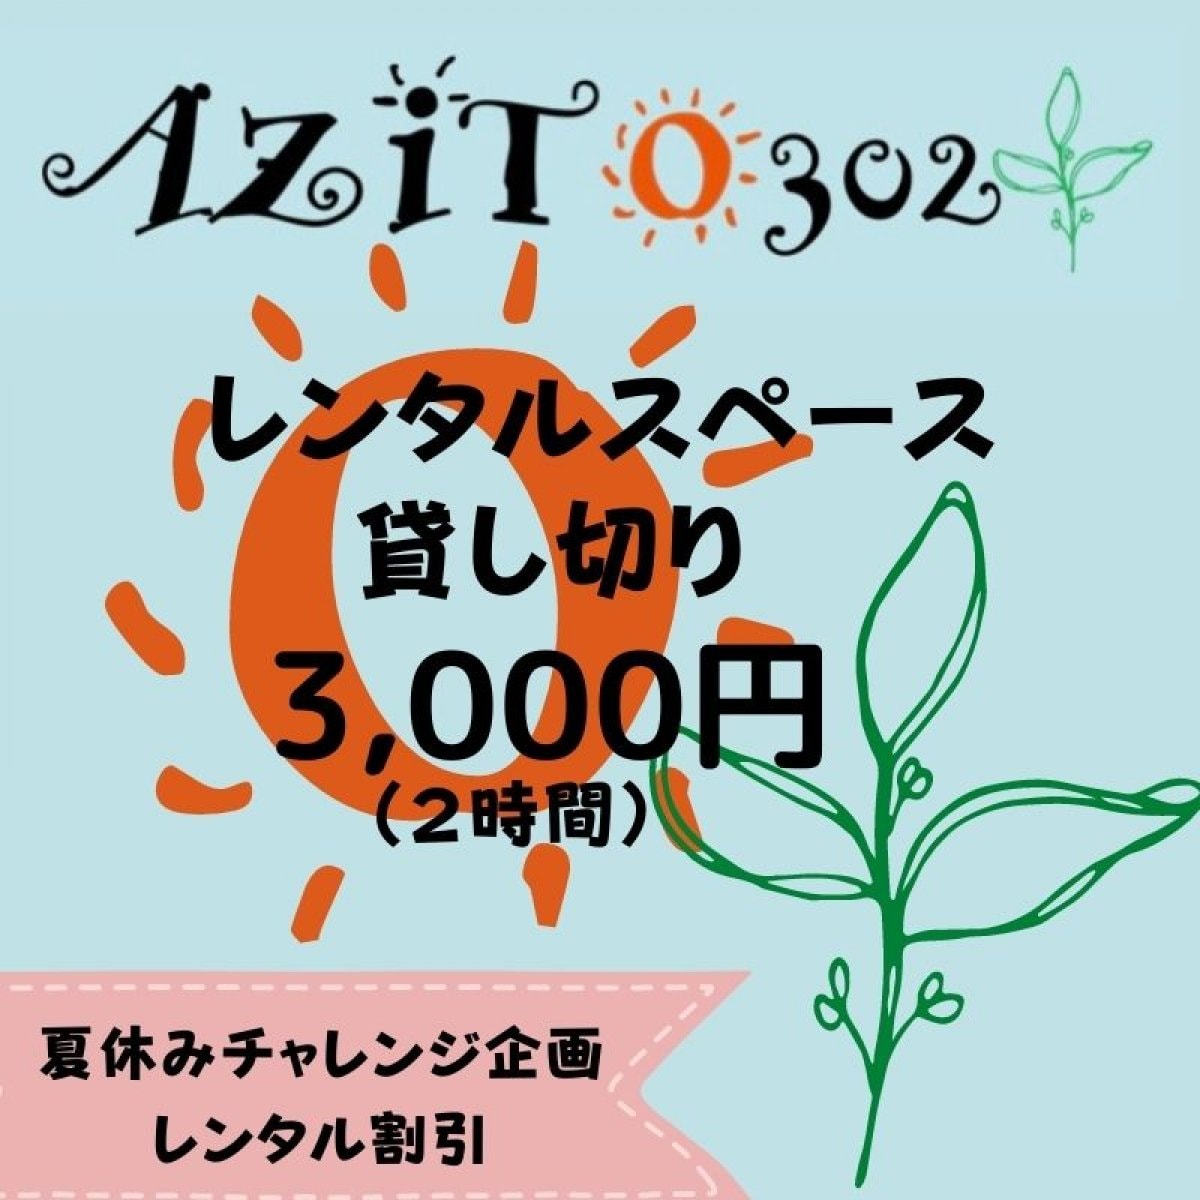 【夏休みチャレンジ企画】レンタルスペース【AZITO302】お得に貸し切り２時間チケット